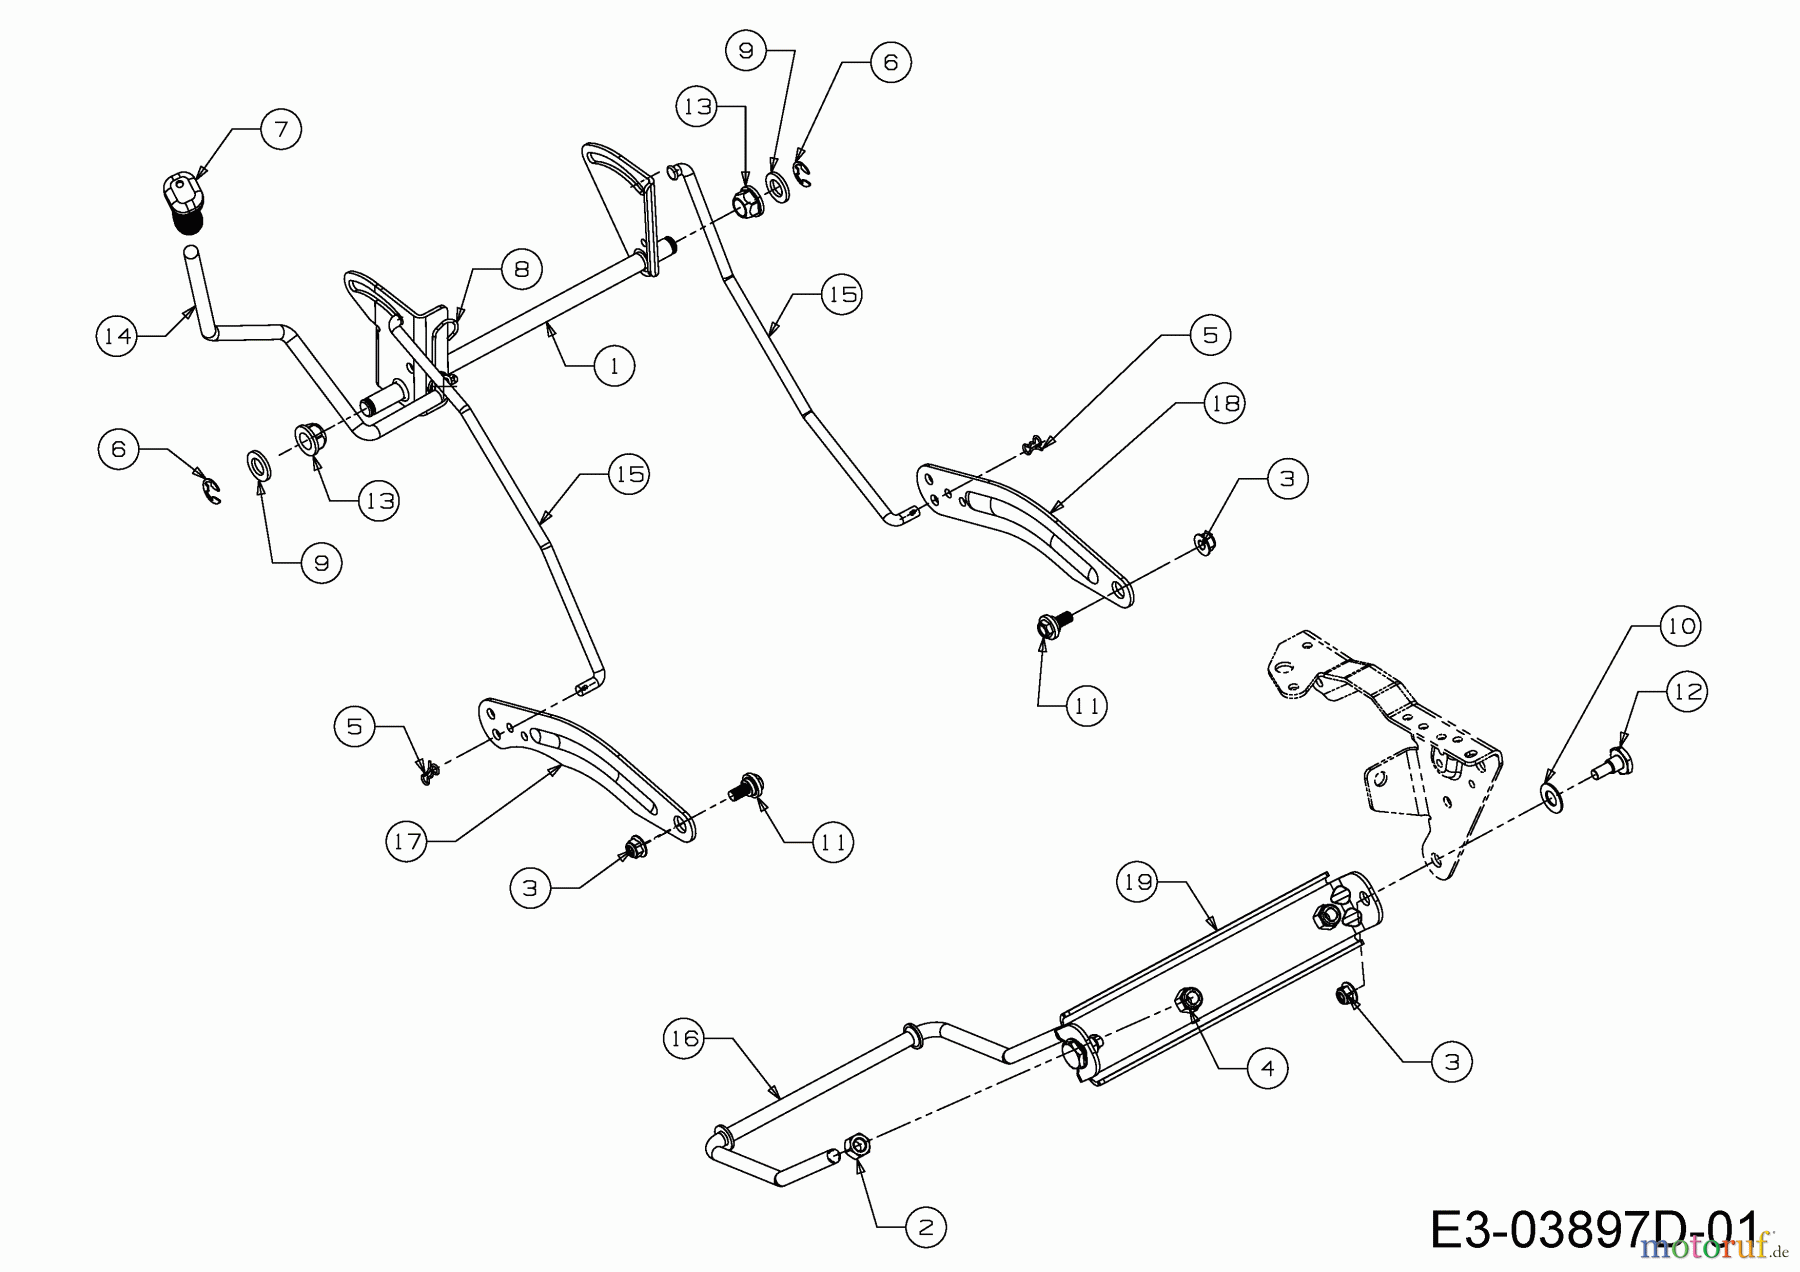  WOLF-Garten Expert Rasentraktoren E 13/92 T 13H2765E650  (2016) Mähwerksaushebung